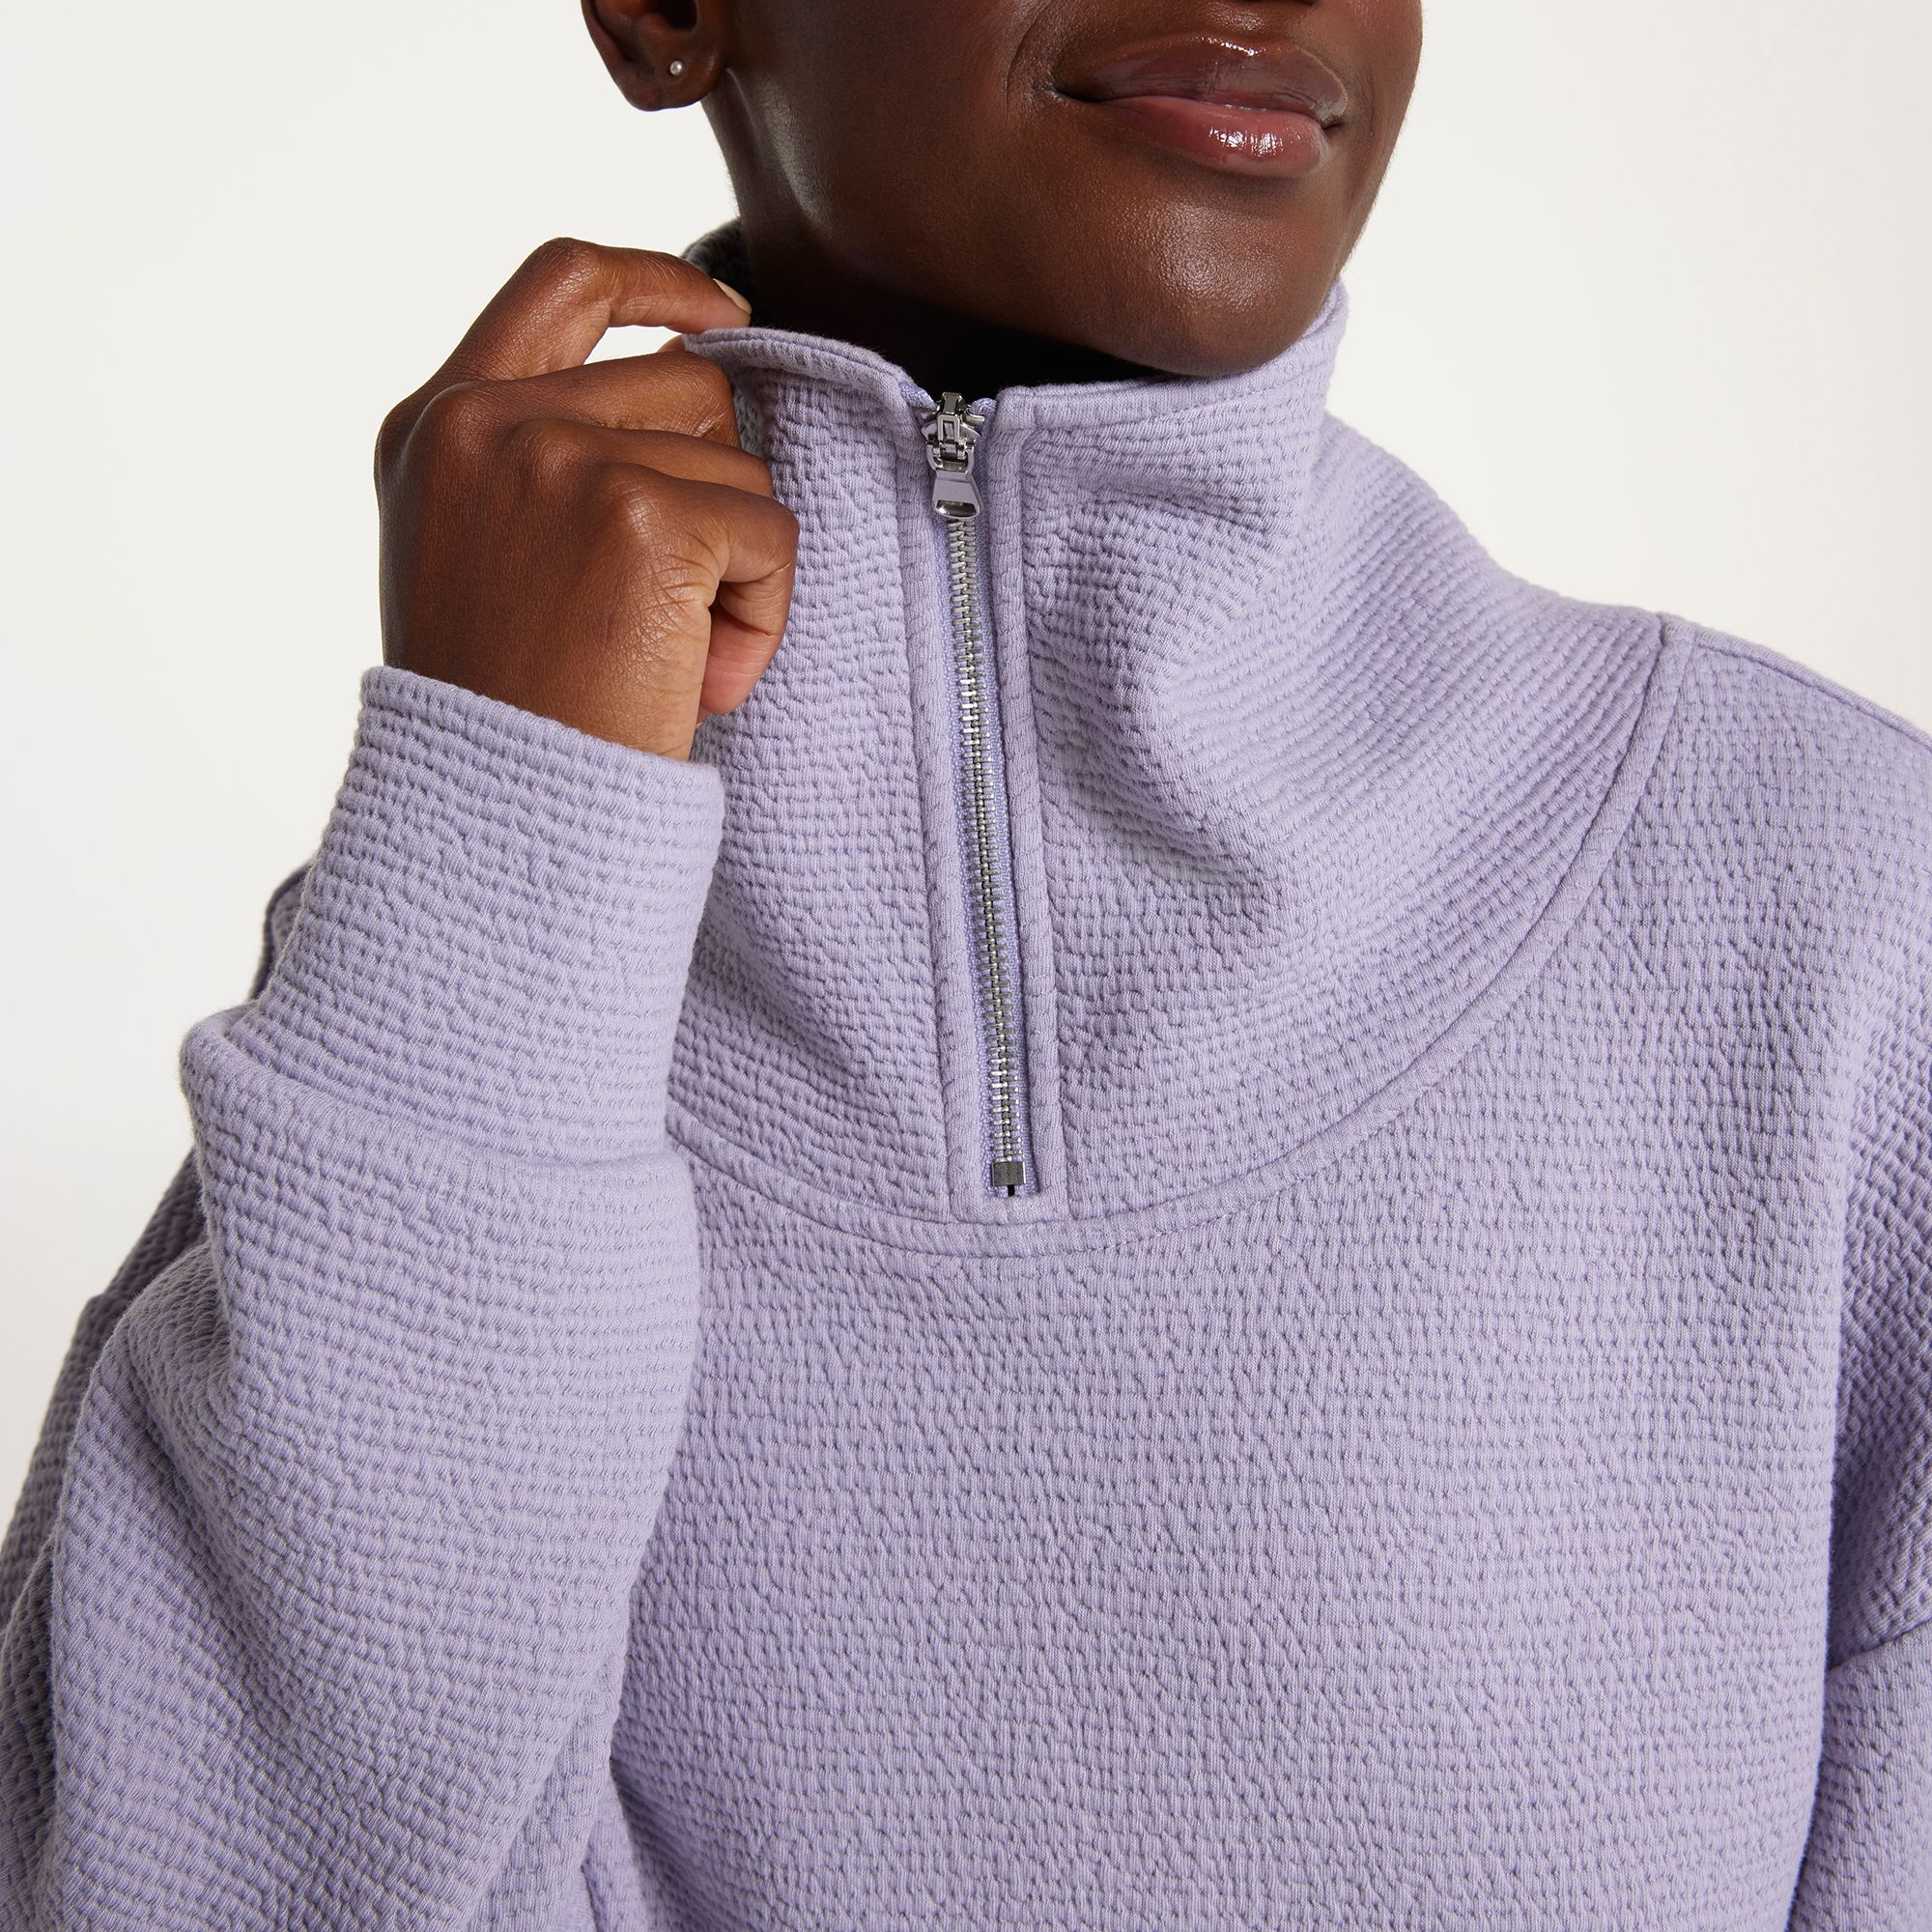 CALIA Women's Essential Rib 1/4 Zip Pullover